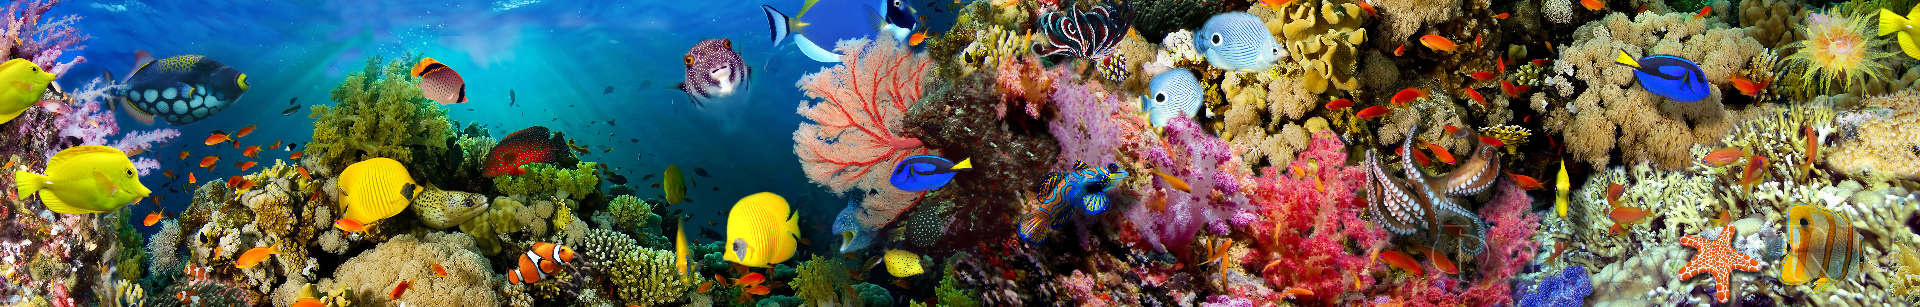 Кораллы, подводный мир